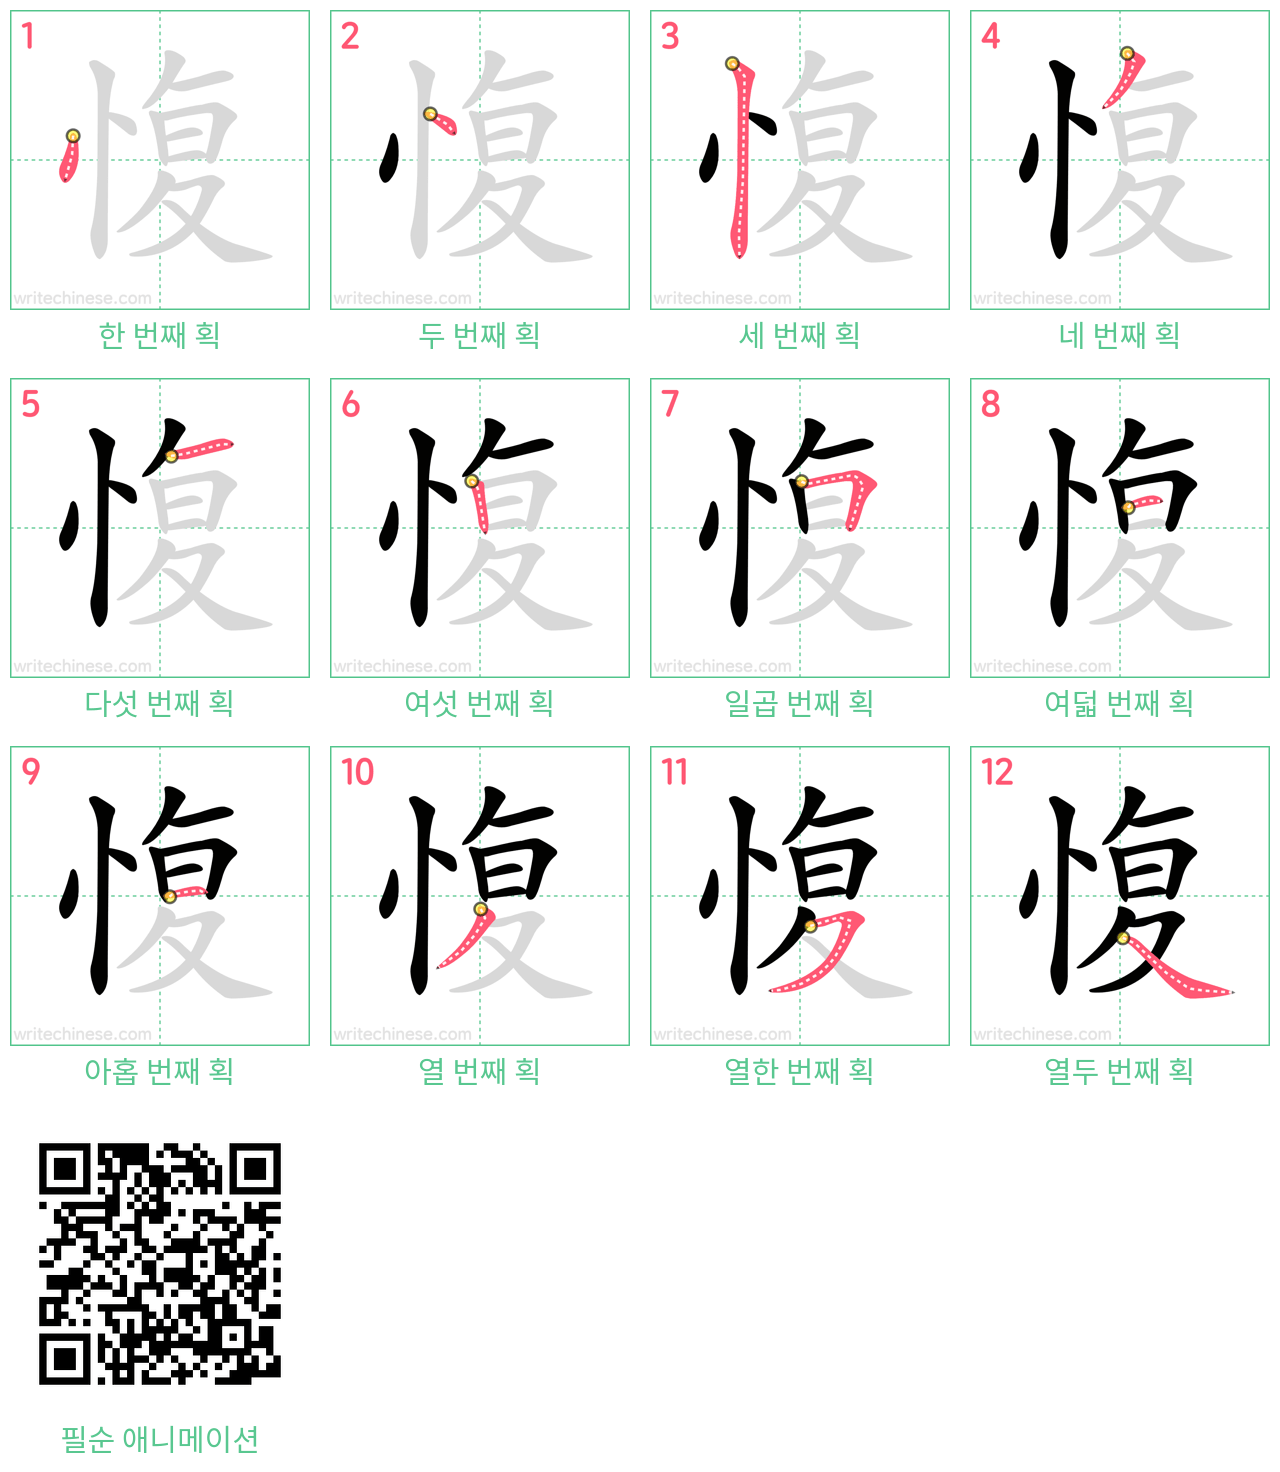 愎 step-by-step stroke order diagrams